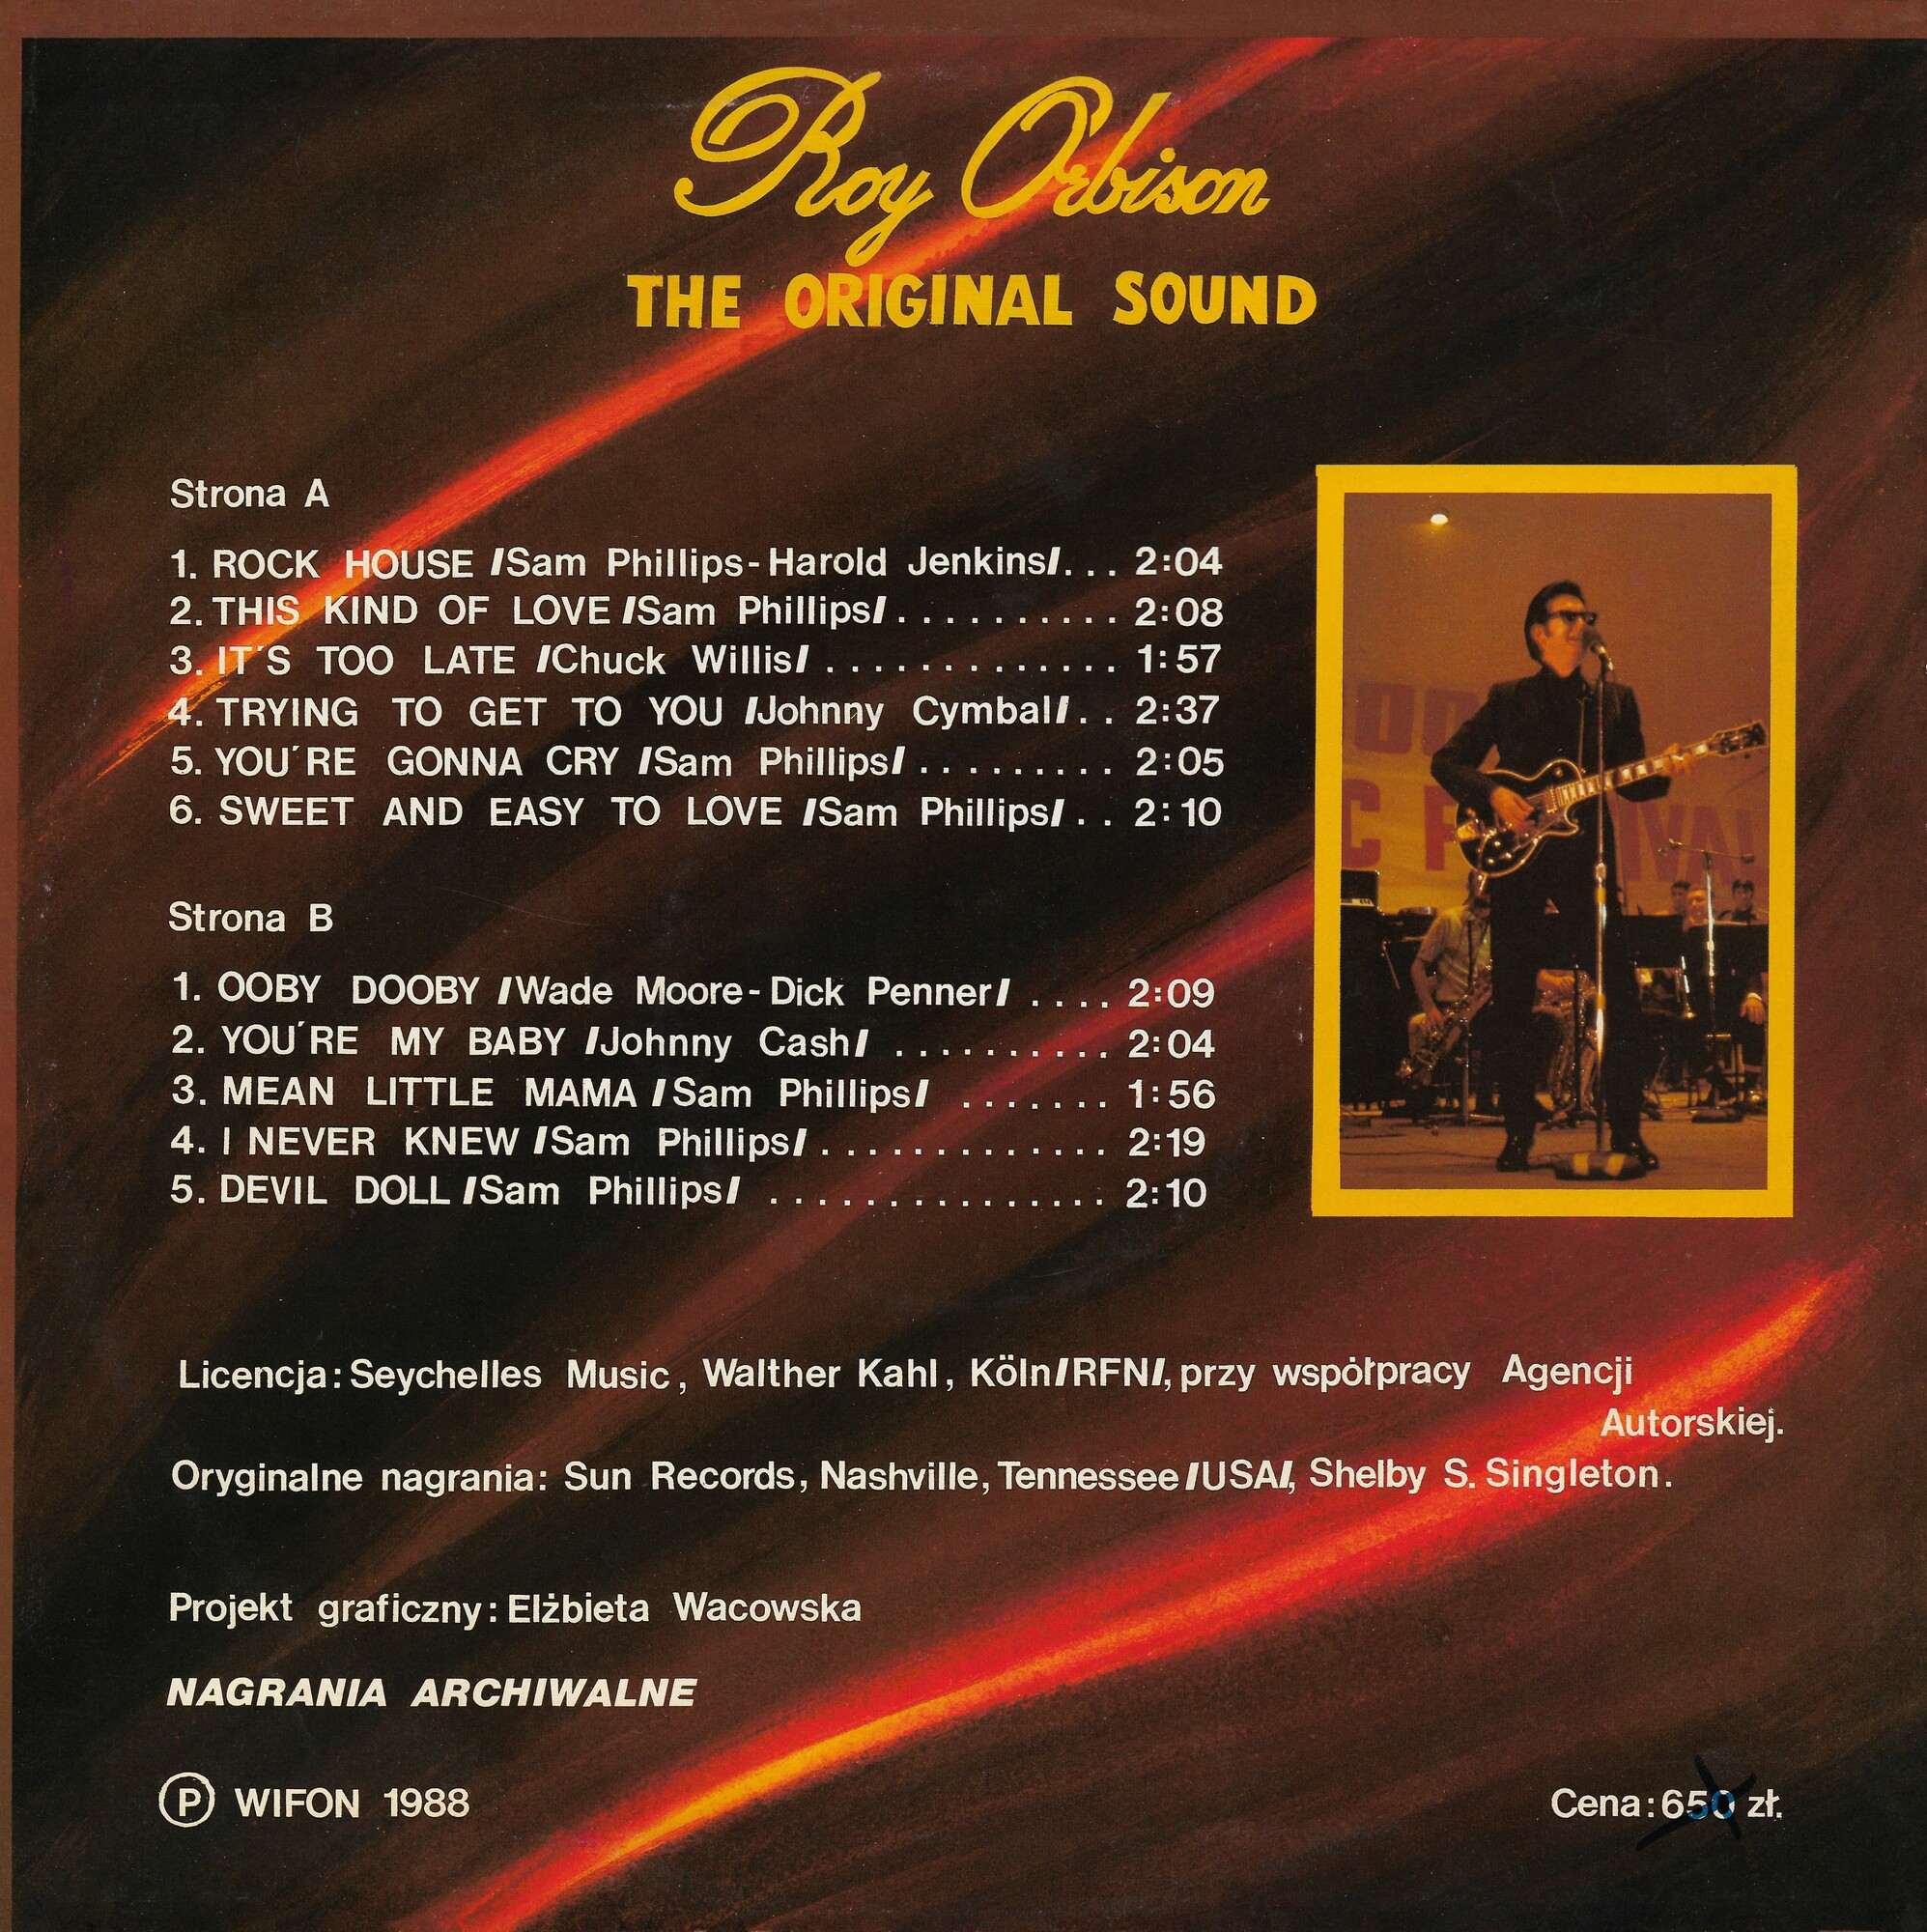 Roy Orbison -  The original sounds [по заказу польской фирмы WIFON, LP 121]